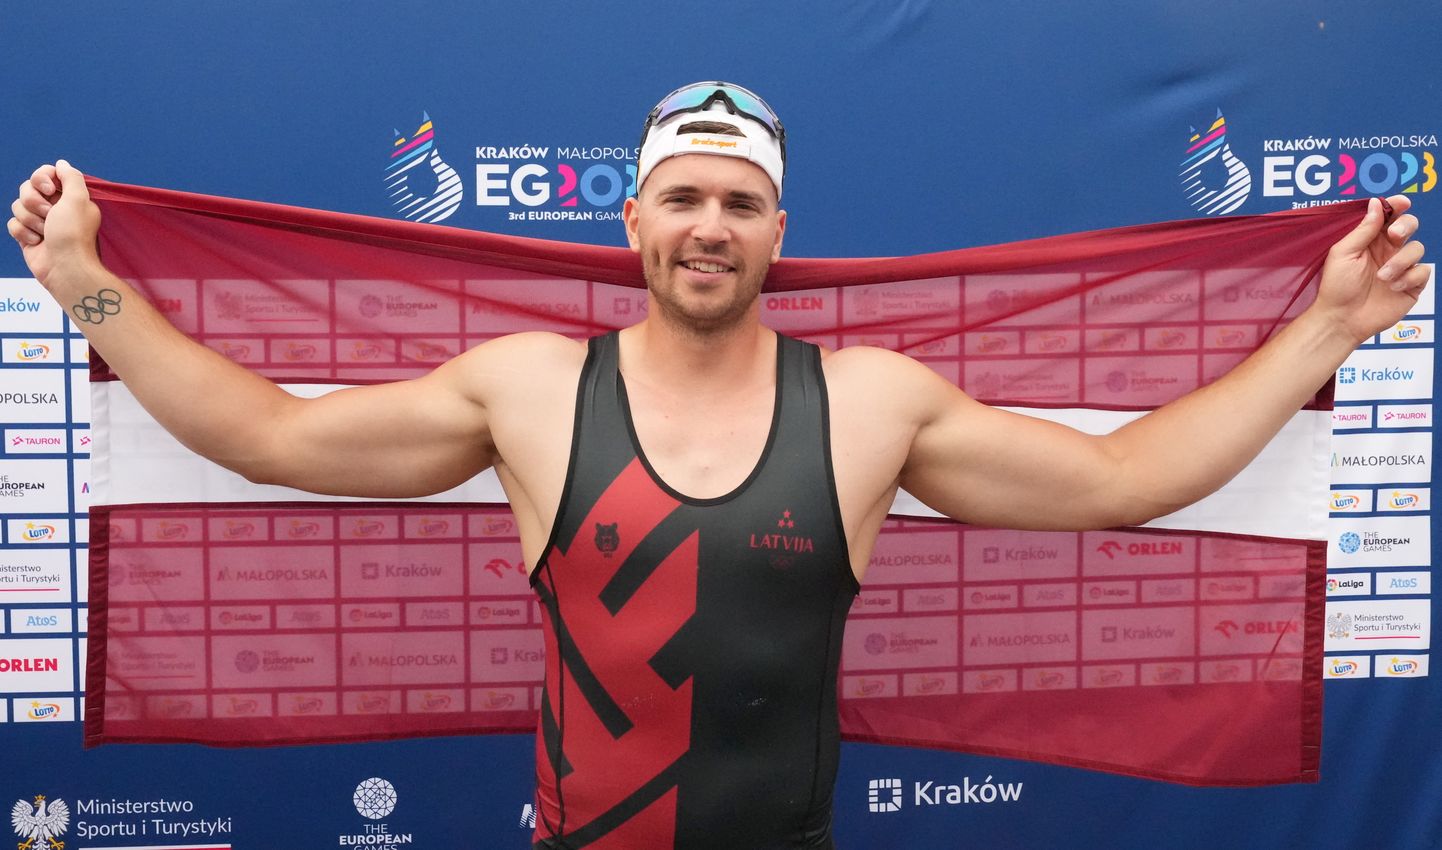 Latvijas smaiļotājs Roberts Akmens K1 200 metru distances smaiļošanas sacensībās III Eiropas spēlēs Krakovā.